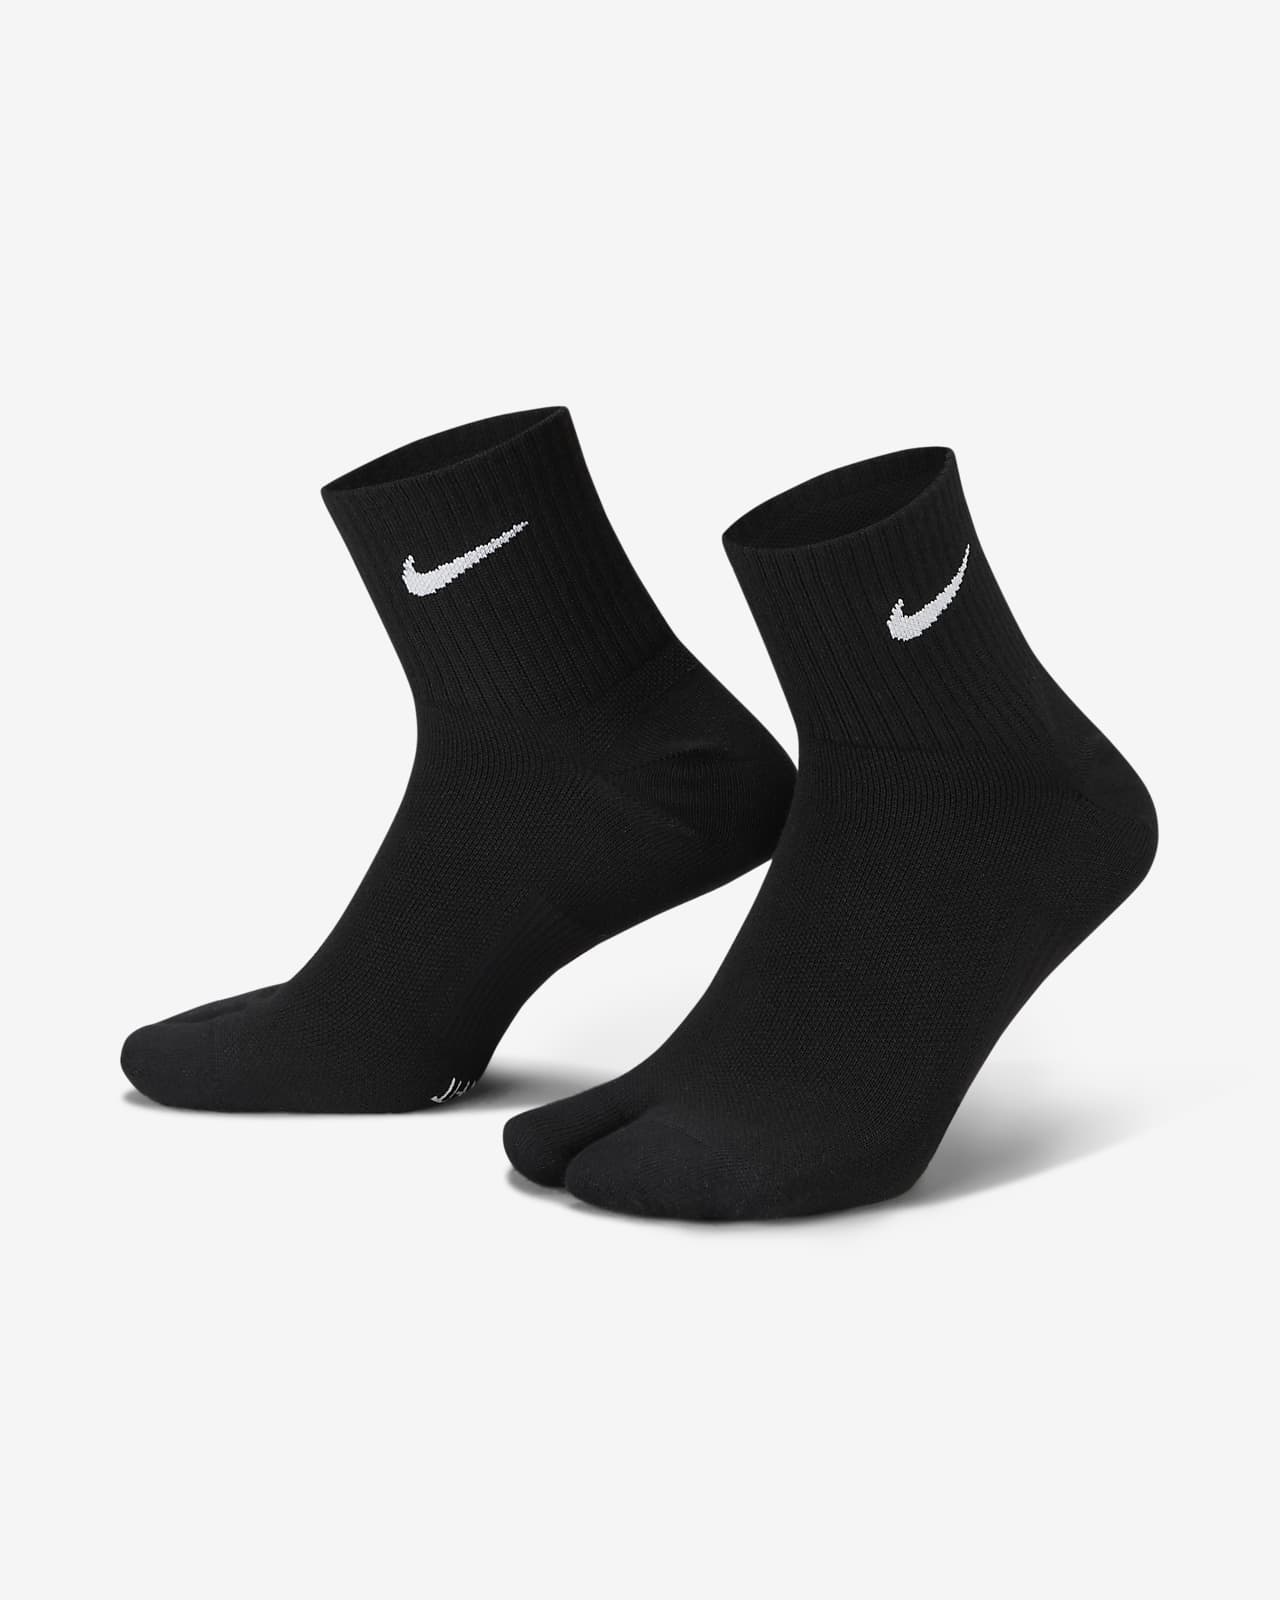 nike men's socks left and right